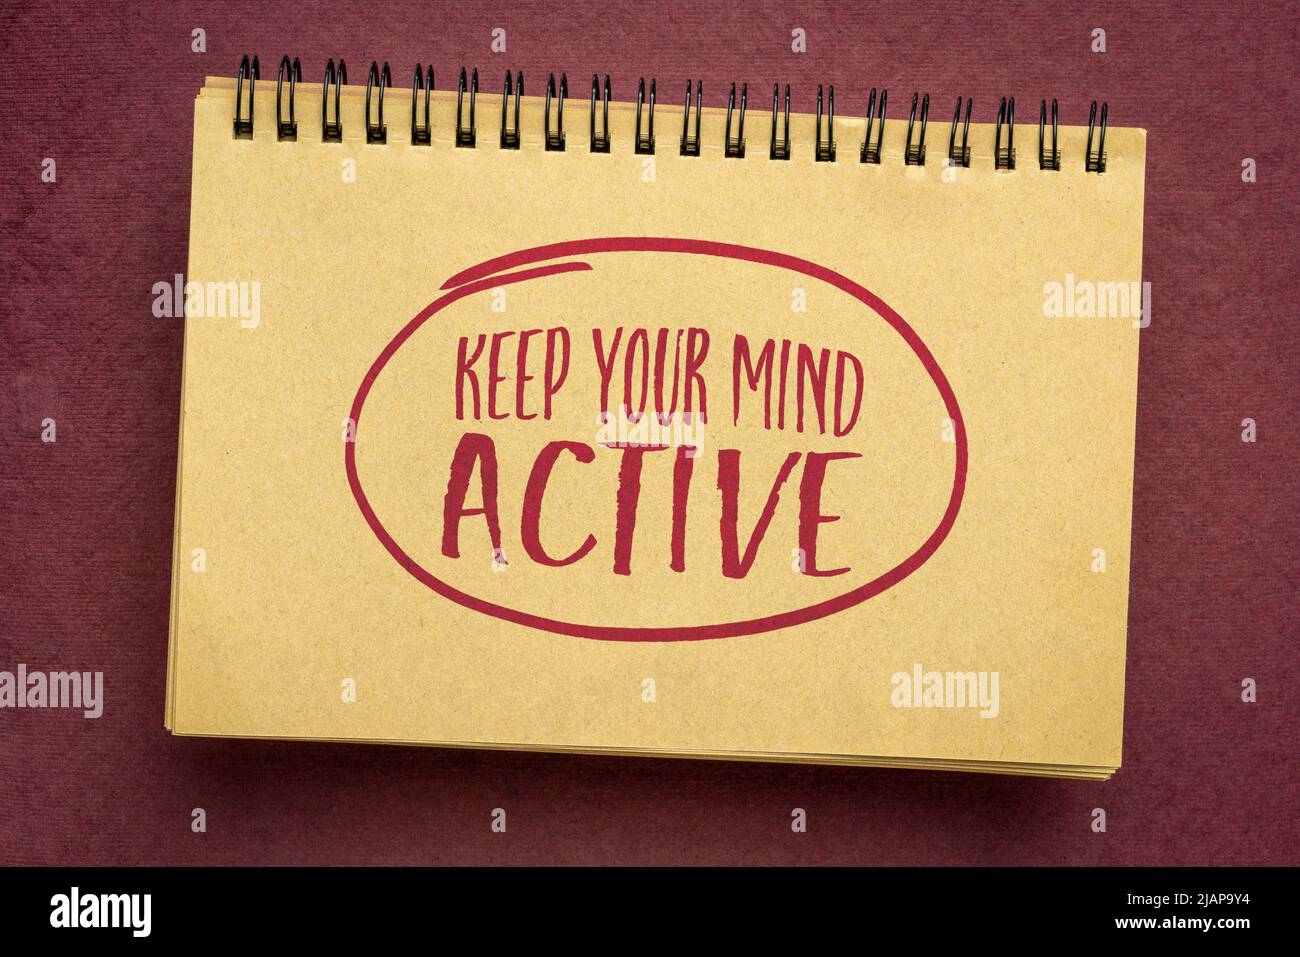 Halten Sie Ihren Geist aktiv, inspirierende Handschrift in einem Notizbuch, persönliche Entwicklung und psychische Gesundheit Konzept Stockfoto